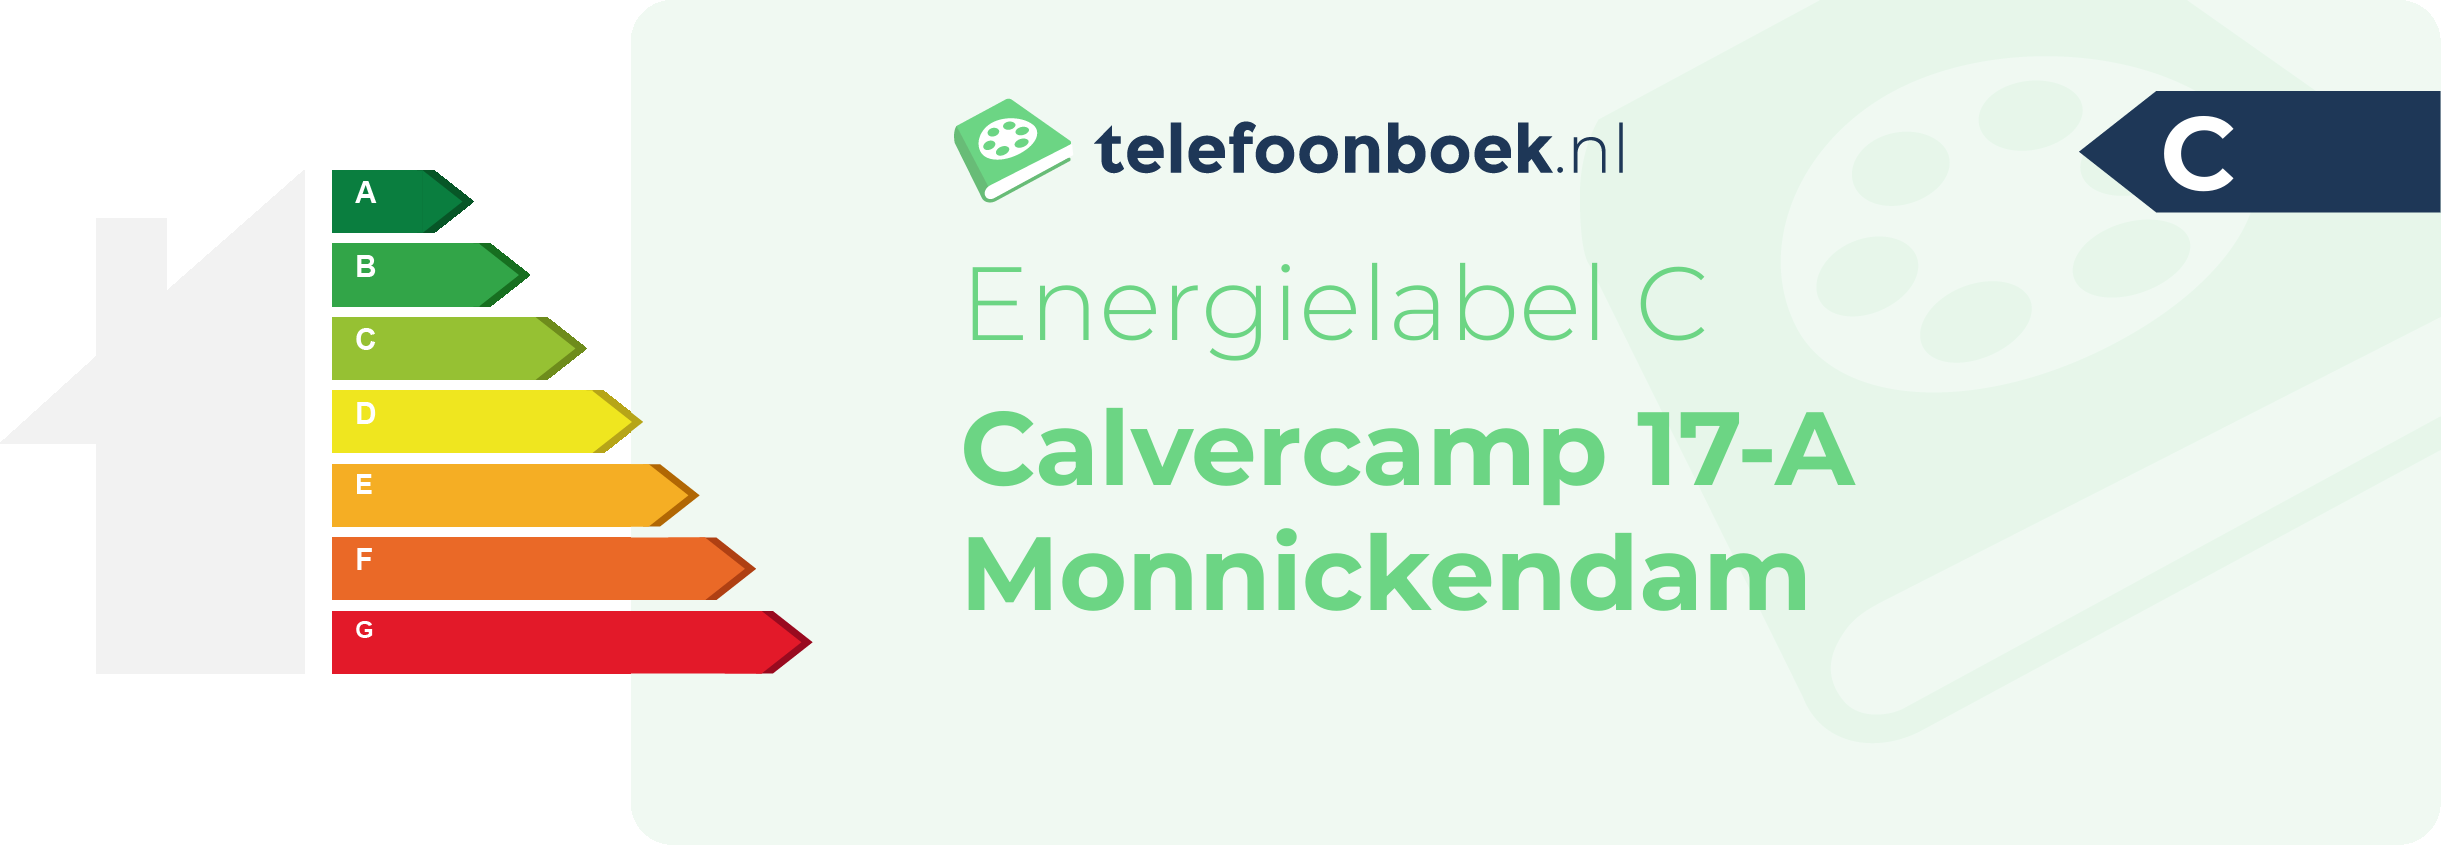 Energielabel Calvercamp 17-A Monnickendam